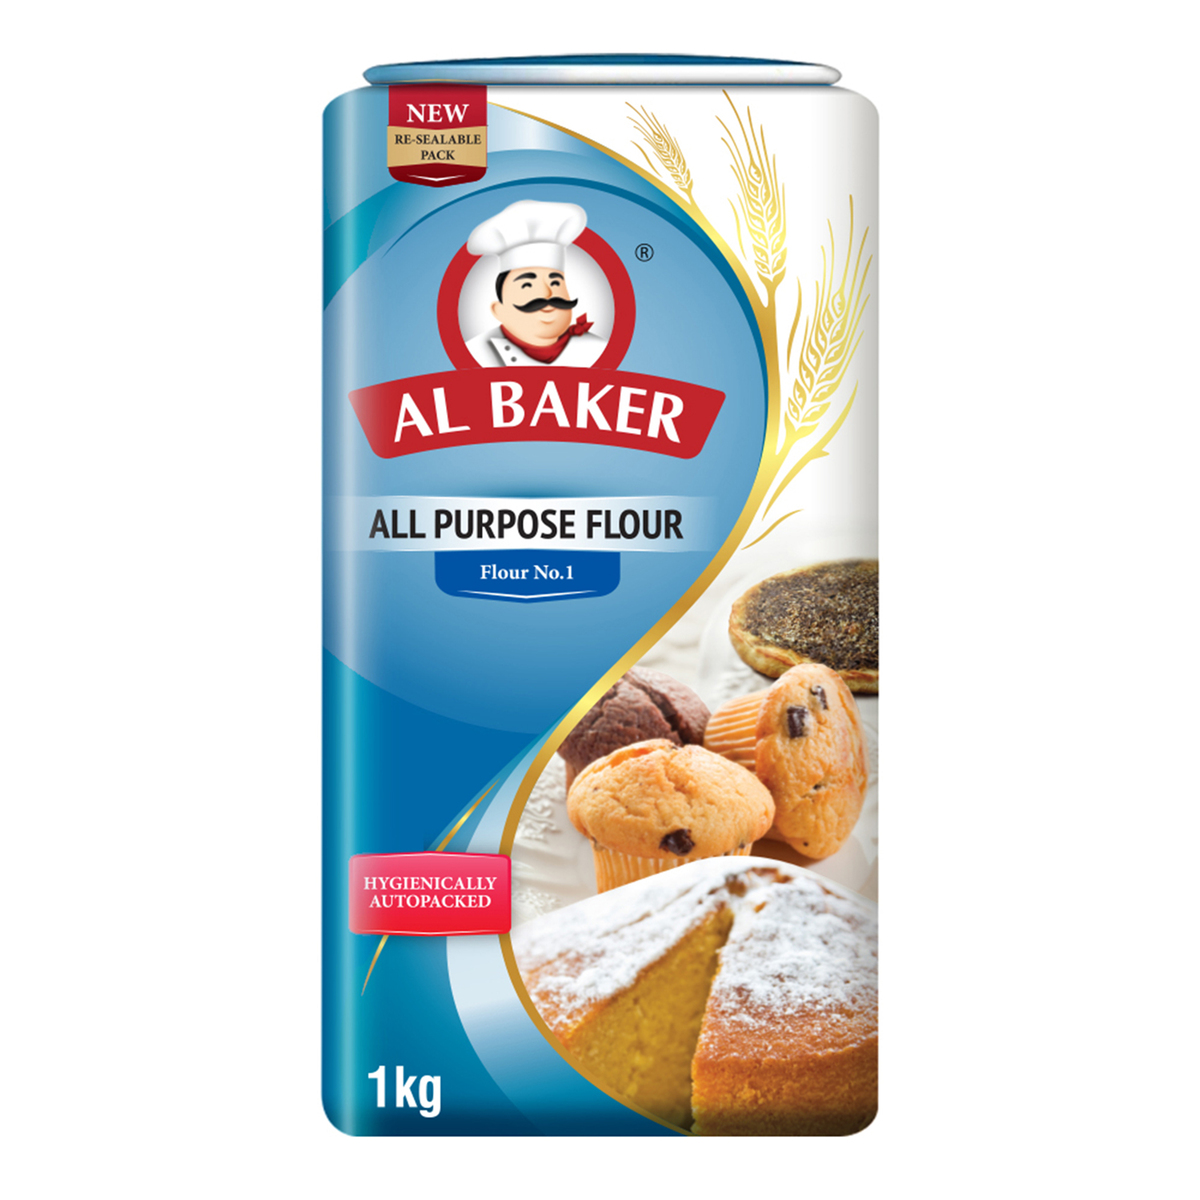 Buy Al Baker All Purpose Flour No.1 1 kg Online at Best Price | Flour | Lulu UAE in UAE